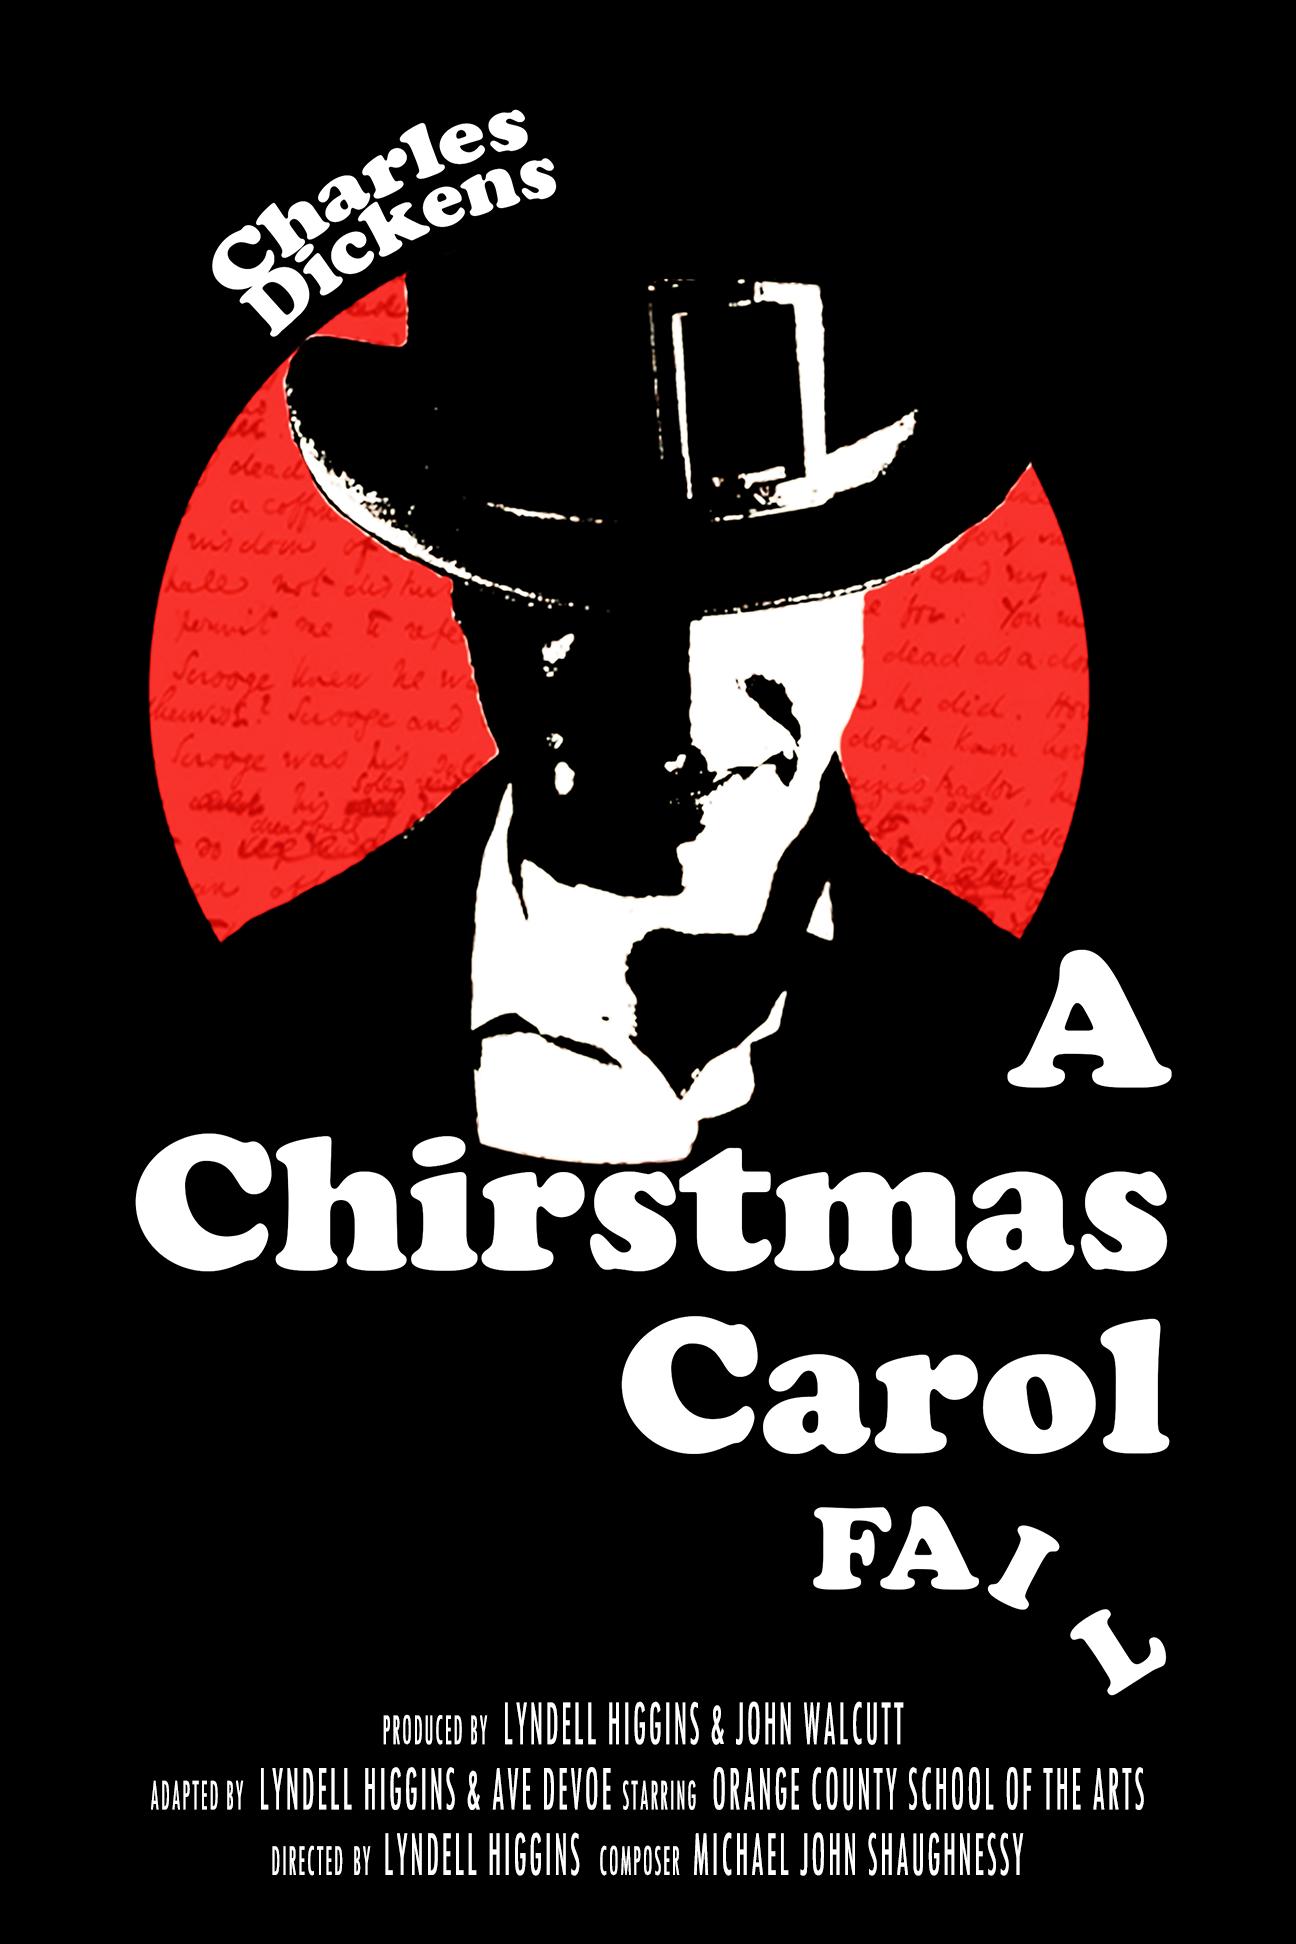 A Christmas Carol Fail